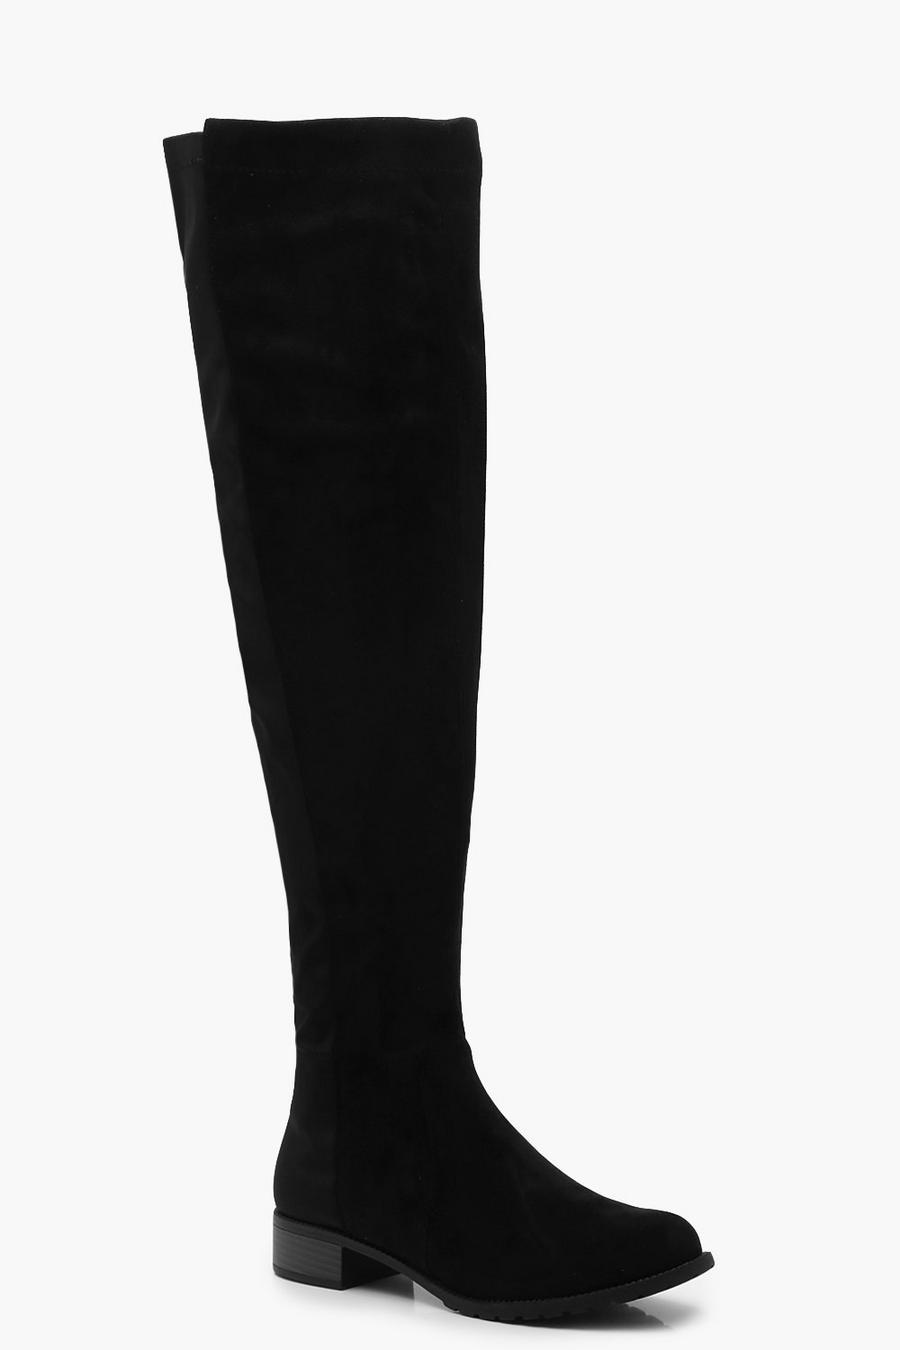 Black Wider Calf Flat Knee High Boots